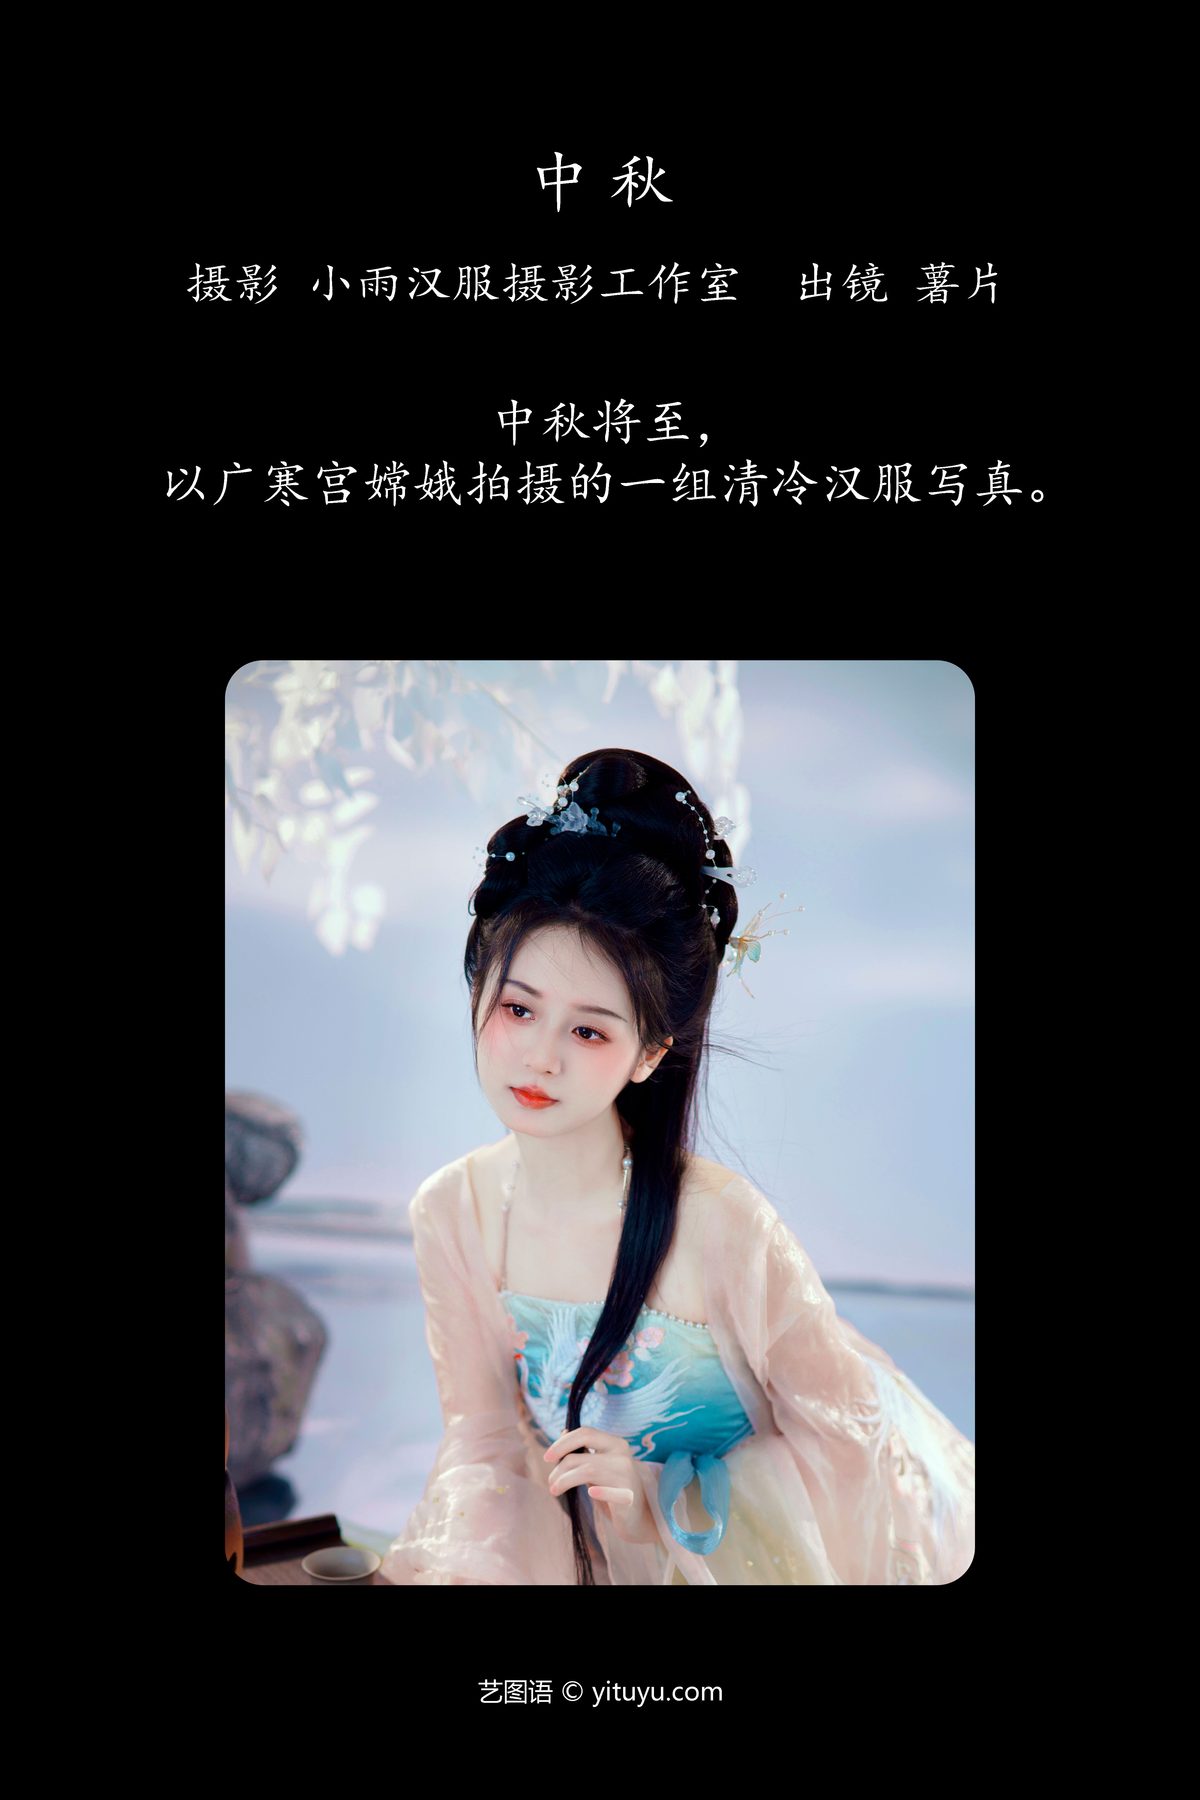 YiTuYu艺图语 Vol 5659 Shu Pian Yoyi 0002 0641170436.jpg